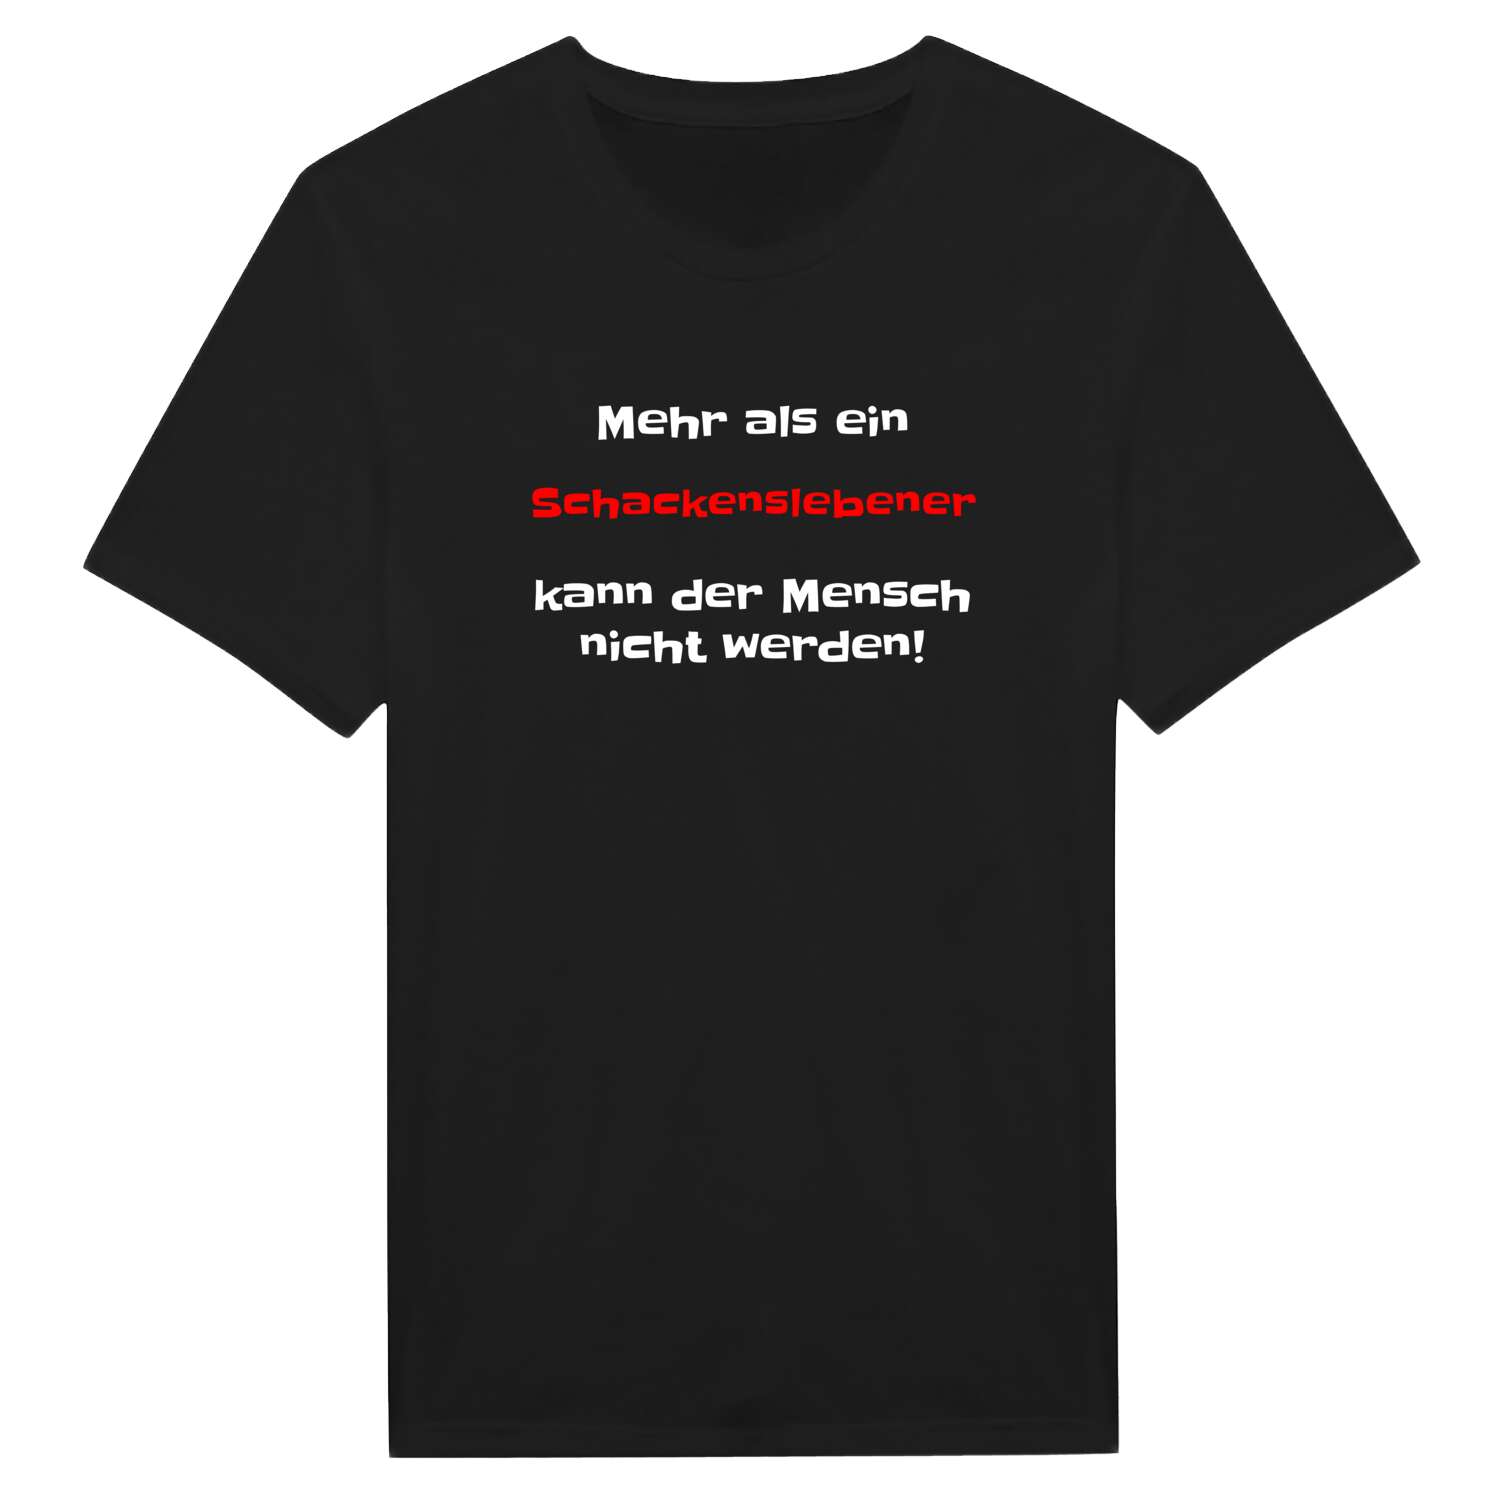 Schackensleben T-Shirt »Mehr als ein«